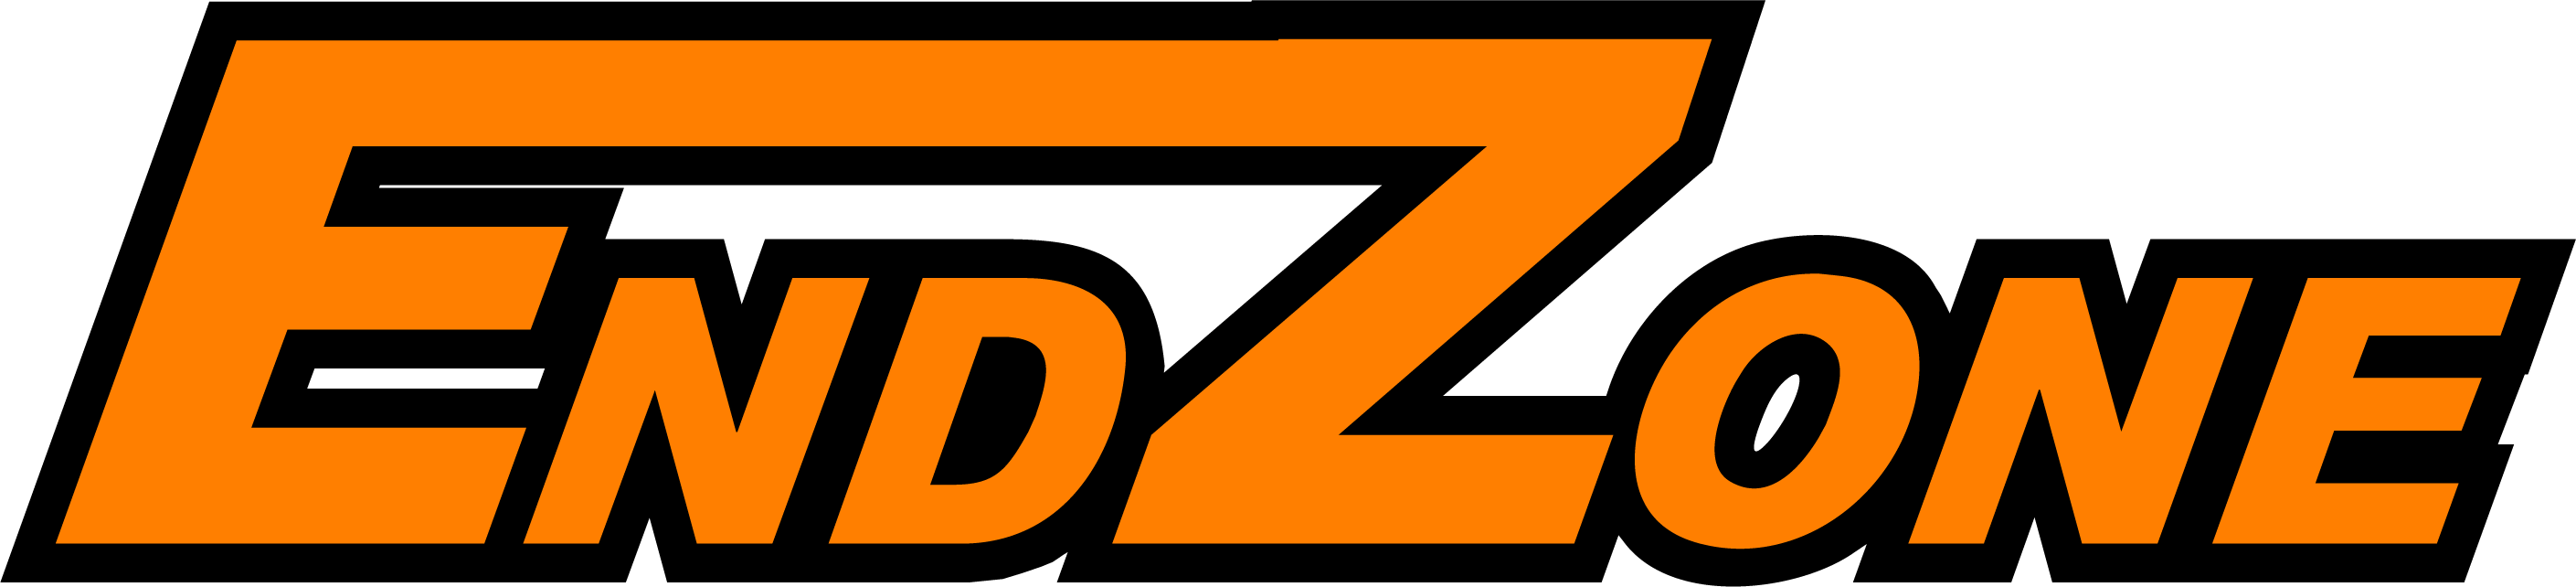 Endzone Sports Exchange / Paul & Michelle Zomer Logo